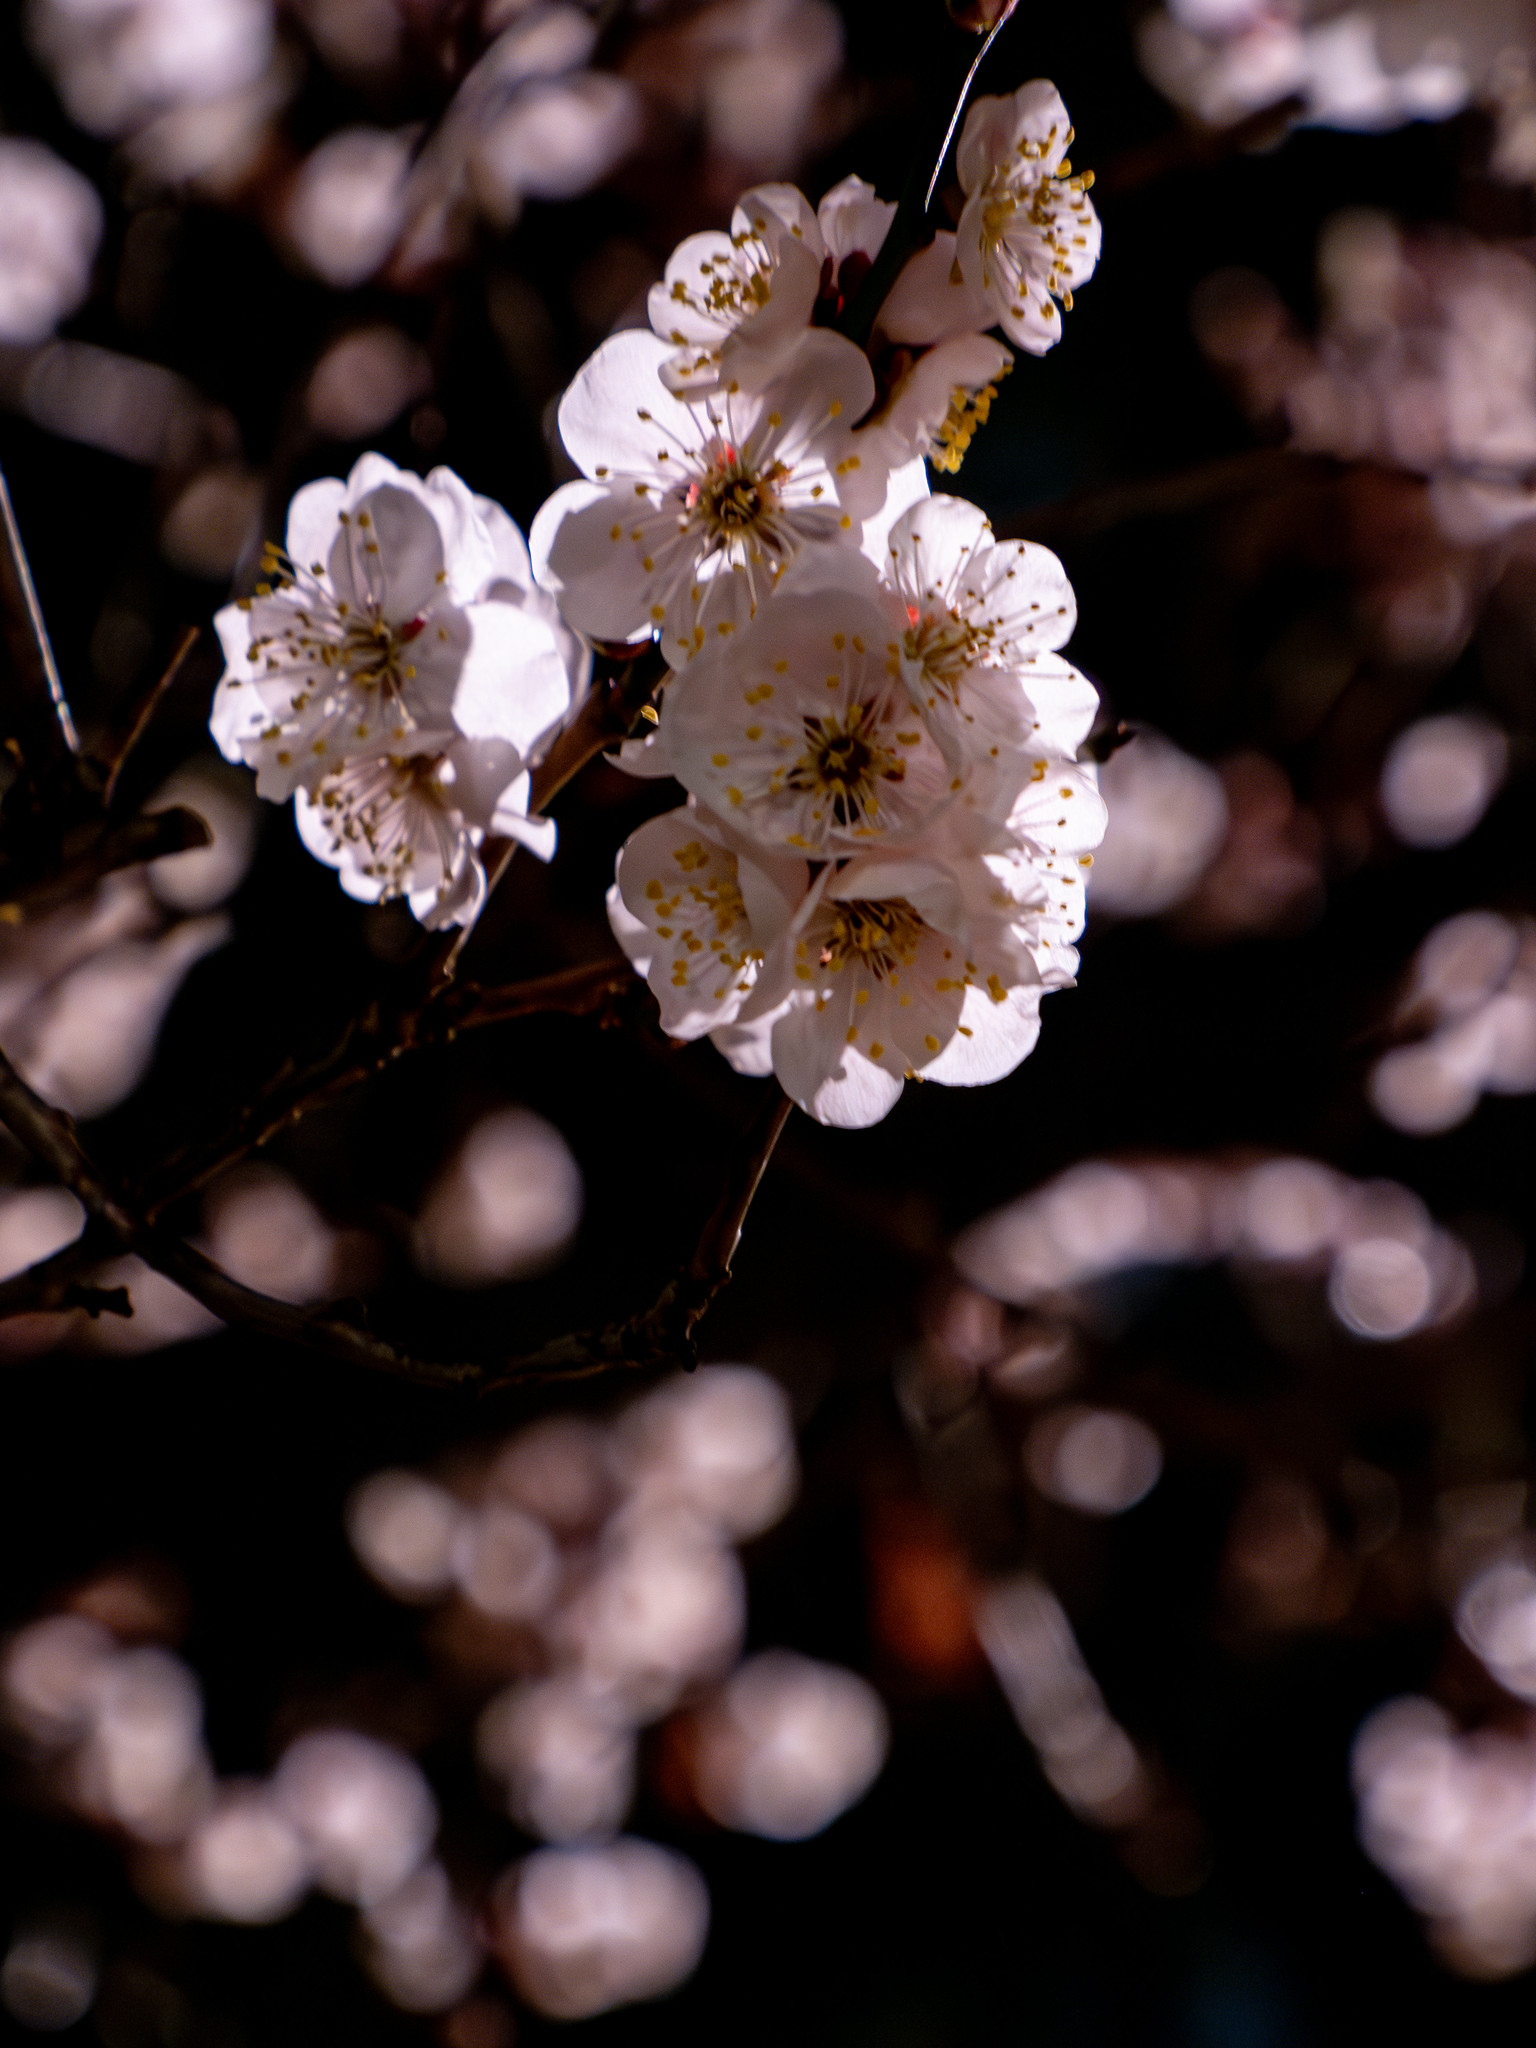 夜の亀戸天神社の梅と錦糸公園の河津桜と東京スカイツリー #夜梅 #夜桜 #スカイツリー